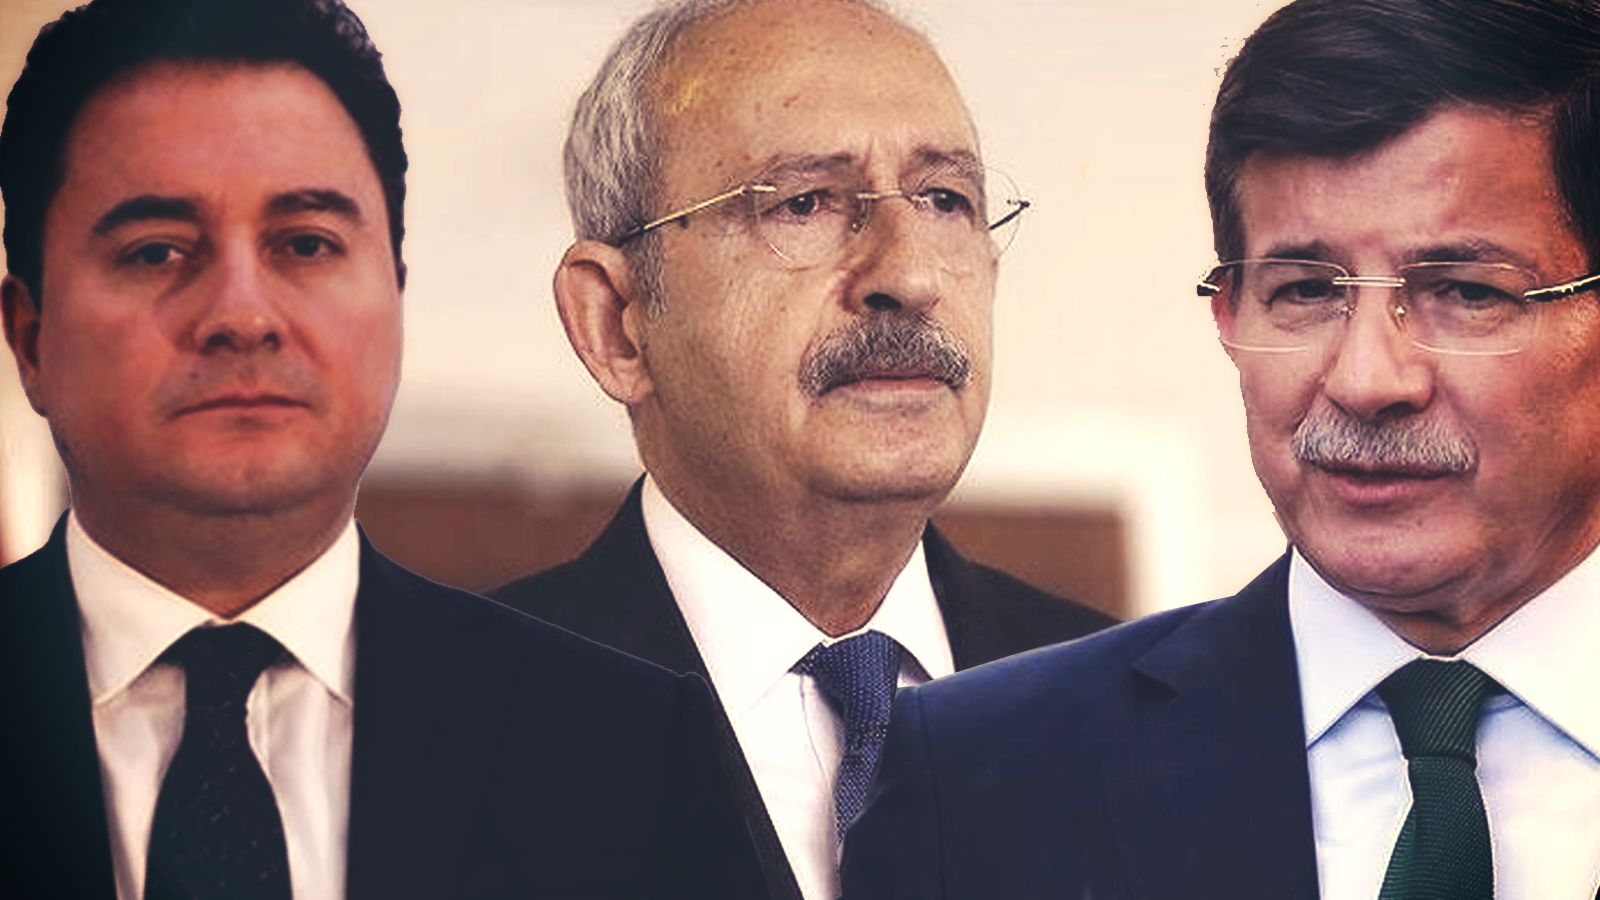 Թուրքիայի գլխավոր ընդդիմադիրը պատրաստ է աջակցել Դավութօղլուի և Բաբաջանի կուսակցություններին